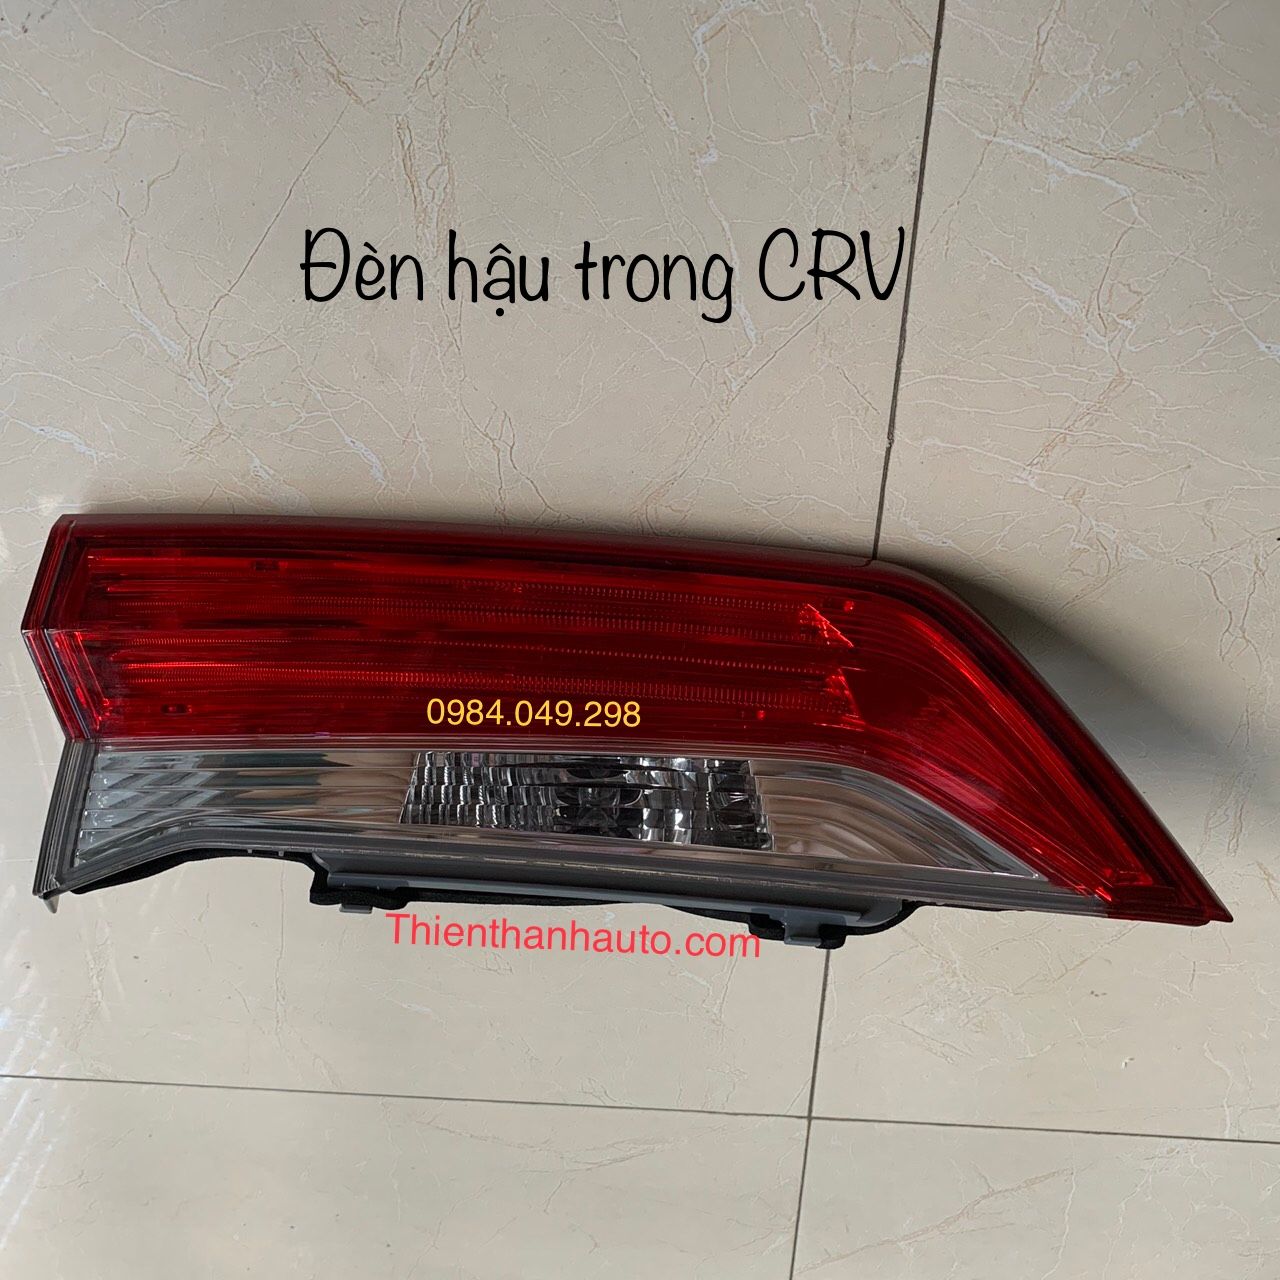 Đèn hậu trong Honda CRV chính hãng - Phụ tùng ô tô Thiên Thanh